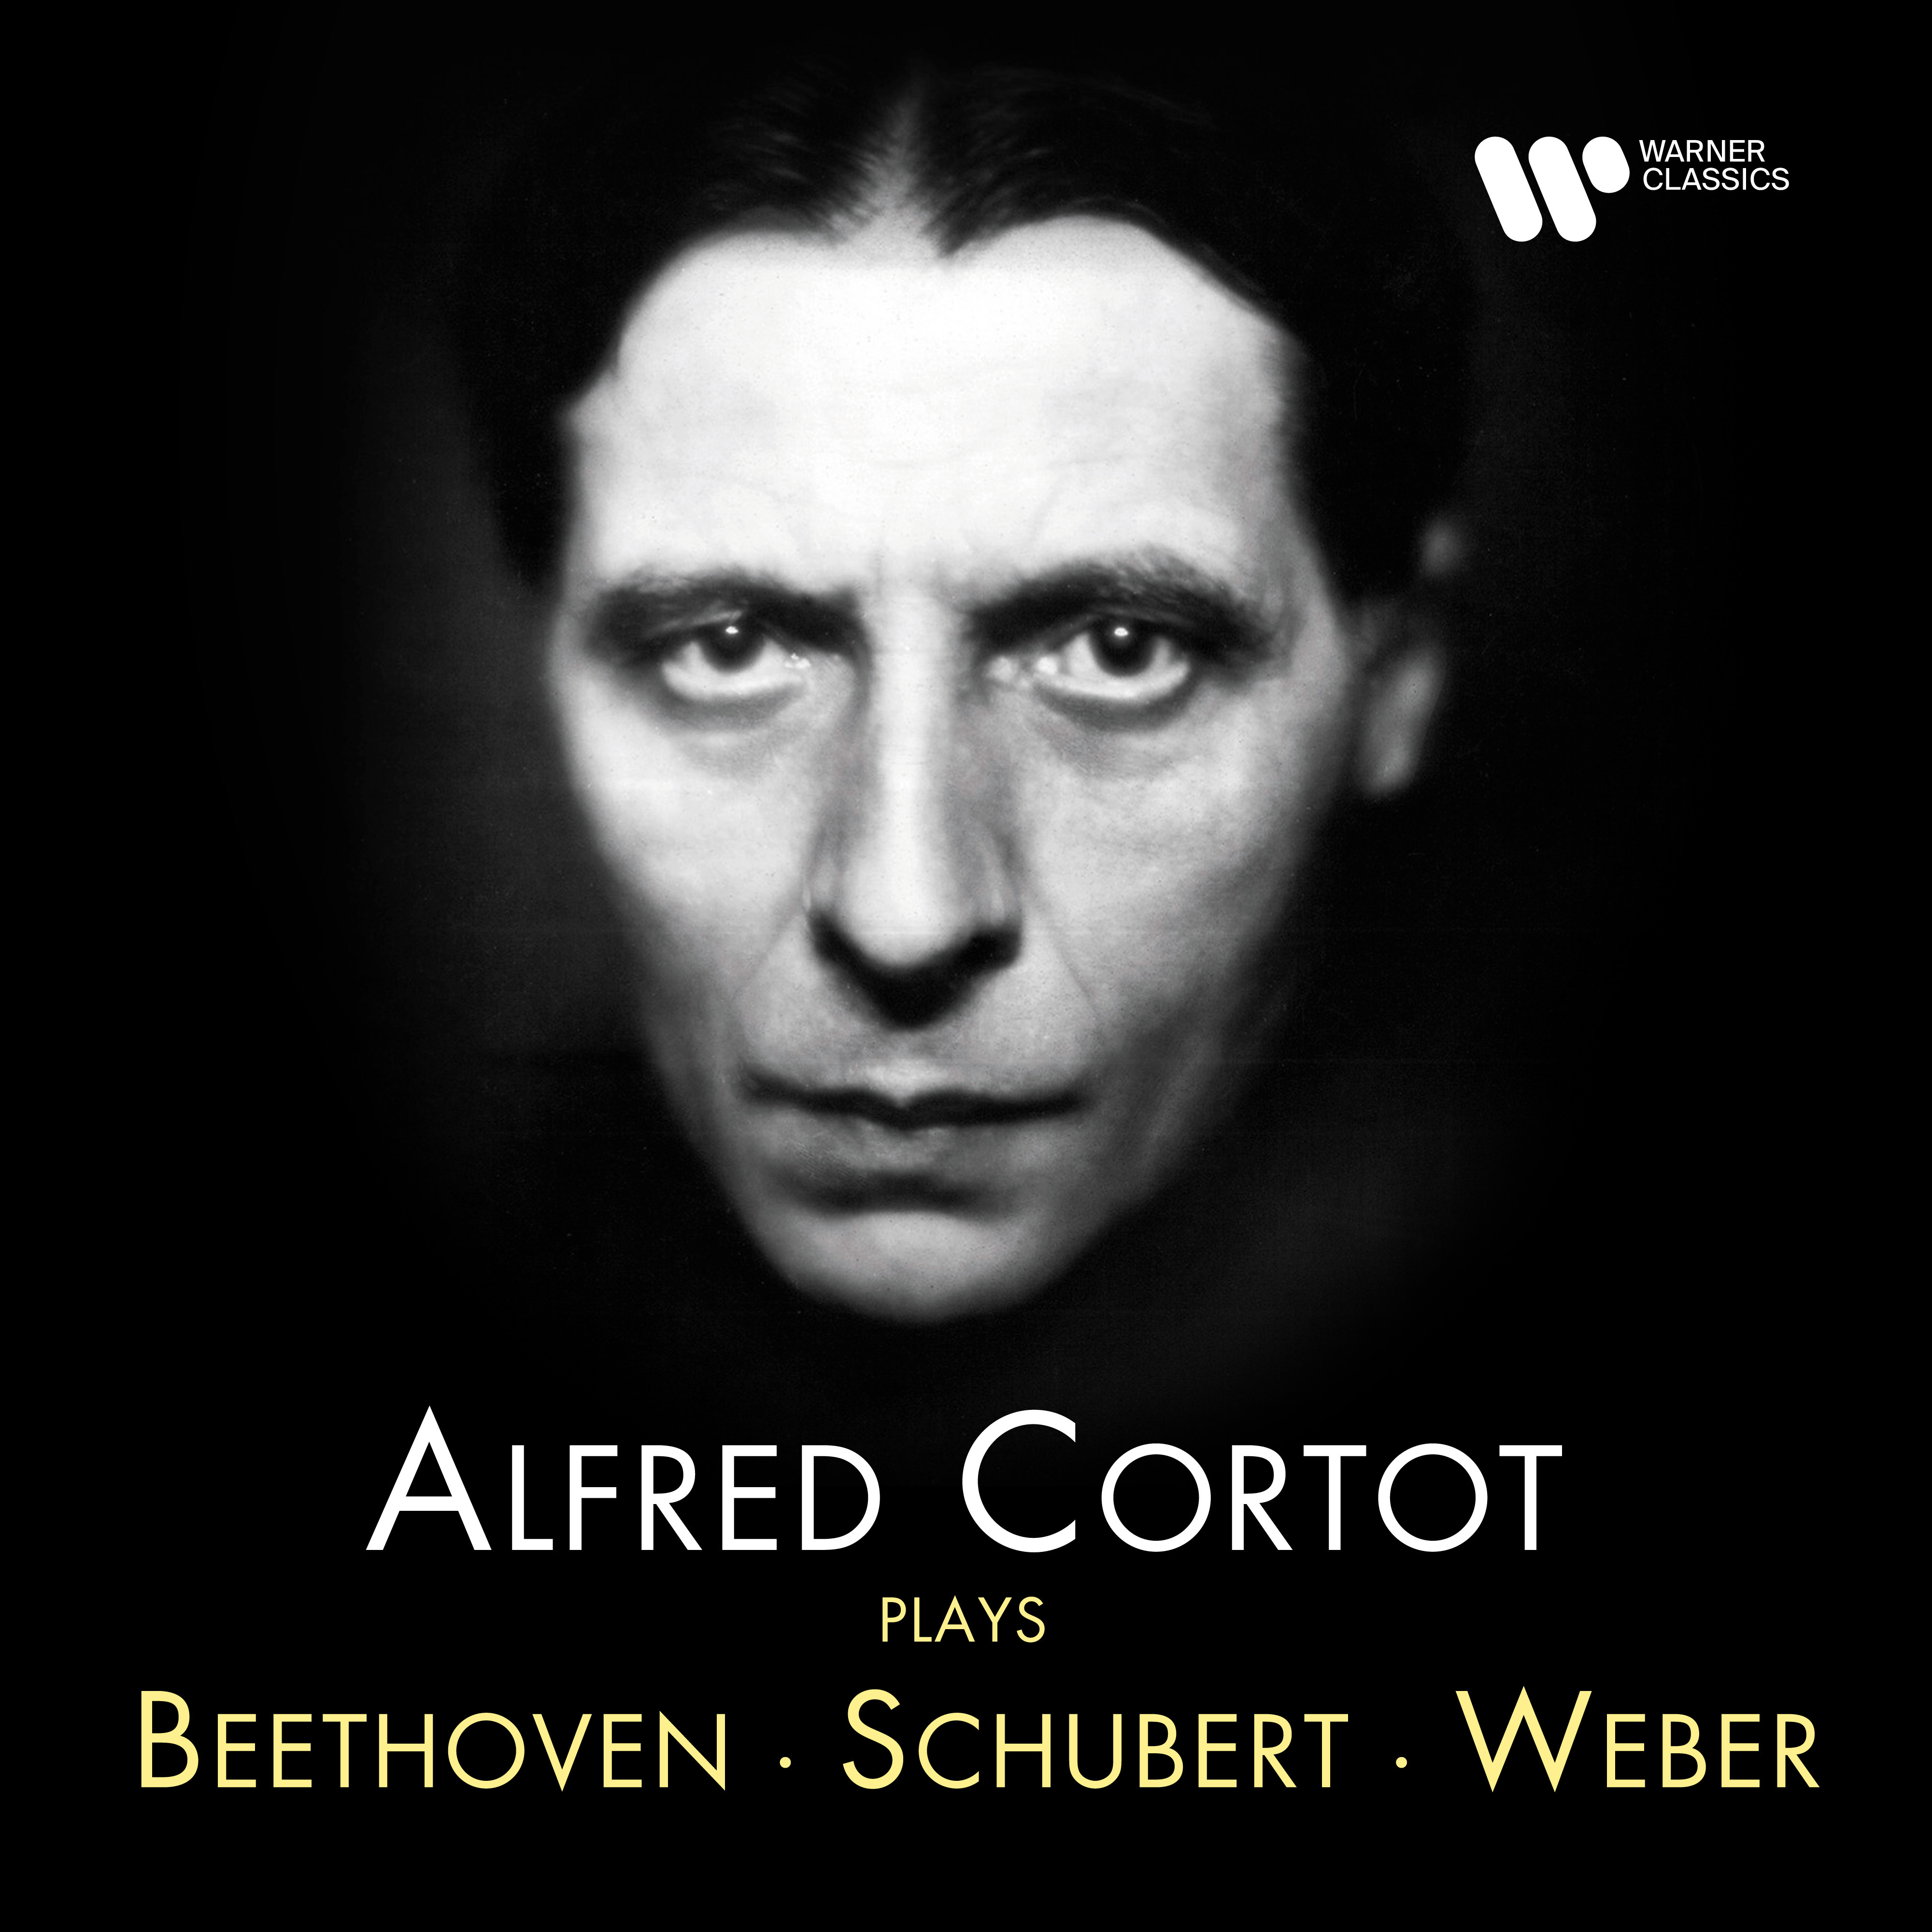 Alfred Cortot Plays Beethoven, Schubert & Weber | Warner Classics